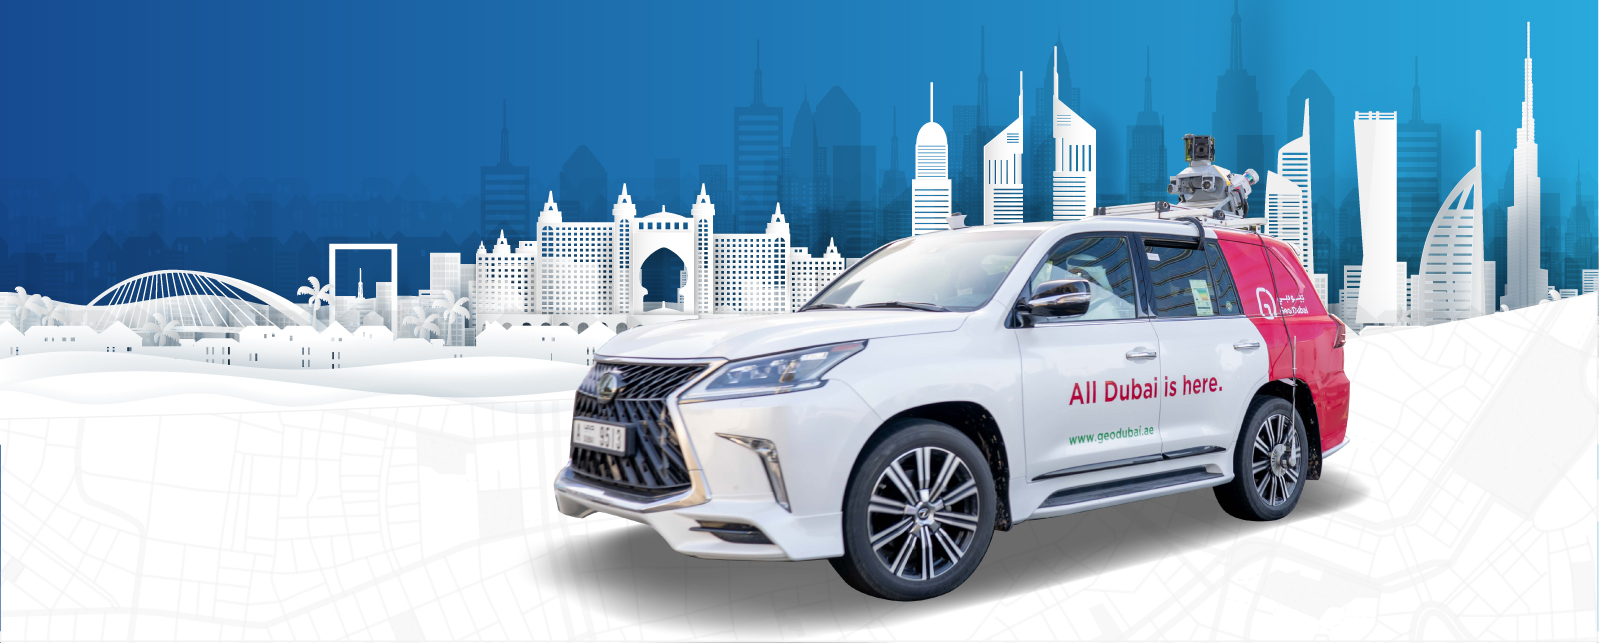 Dubai Municipality launches digital map project for autonomous vehicles June 2022